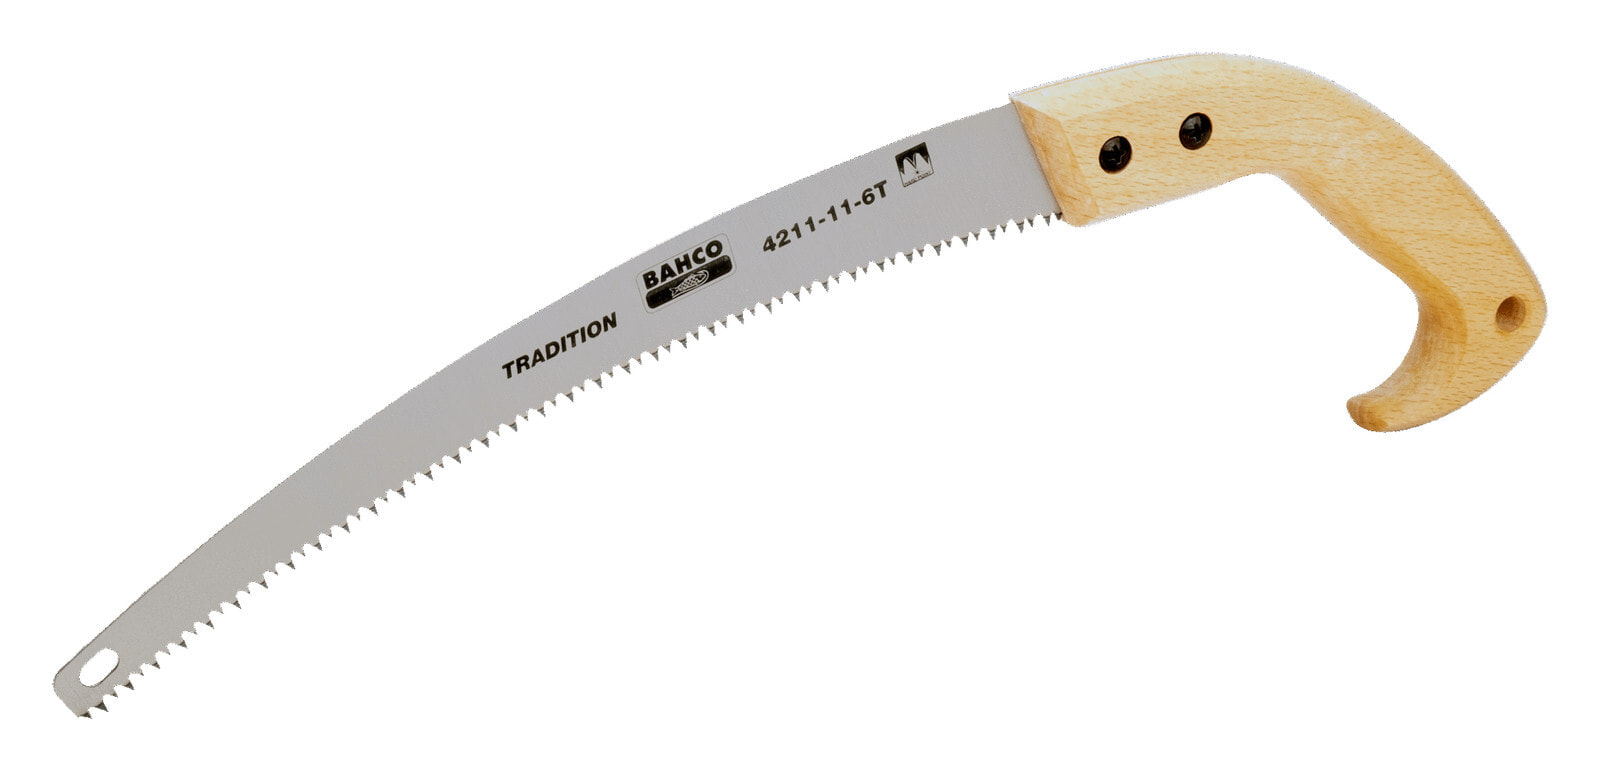 Садовая пила, ножовка или нож Bahco 4211-11-6T Handsäge Baumsäge Edelstahl - Holz 28 cm